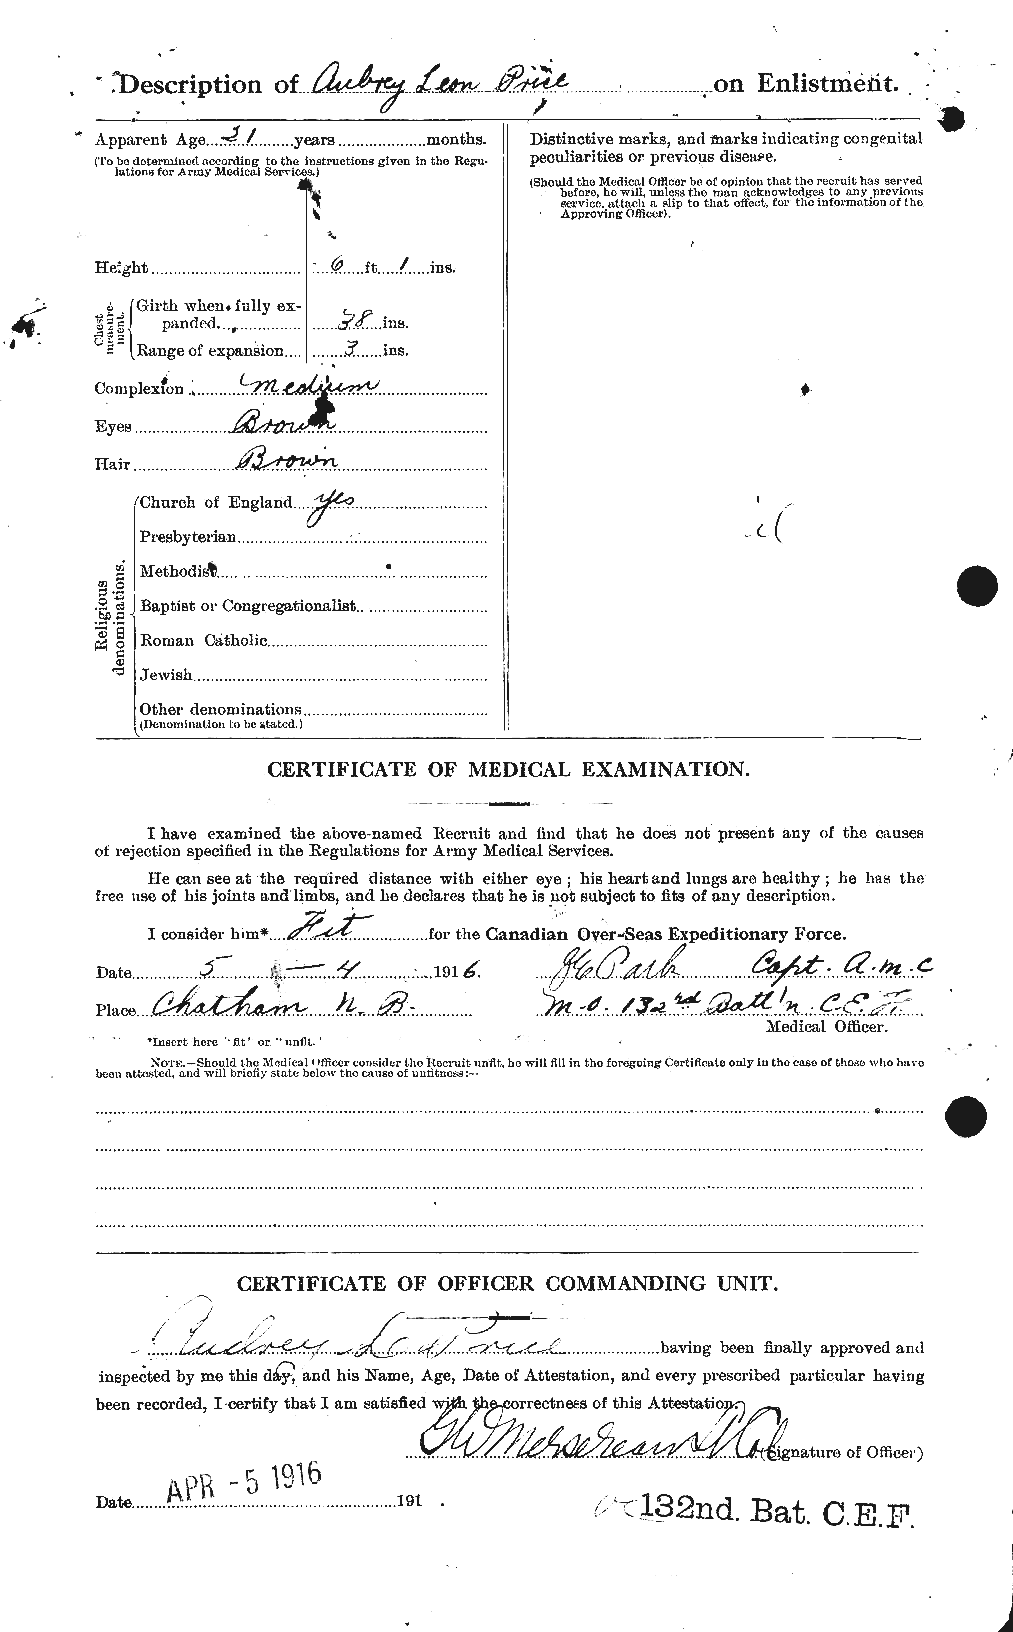 Dossiers du Personnel de la Première Guerre mondiale - CEC 586947b